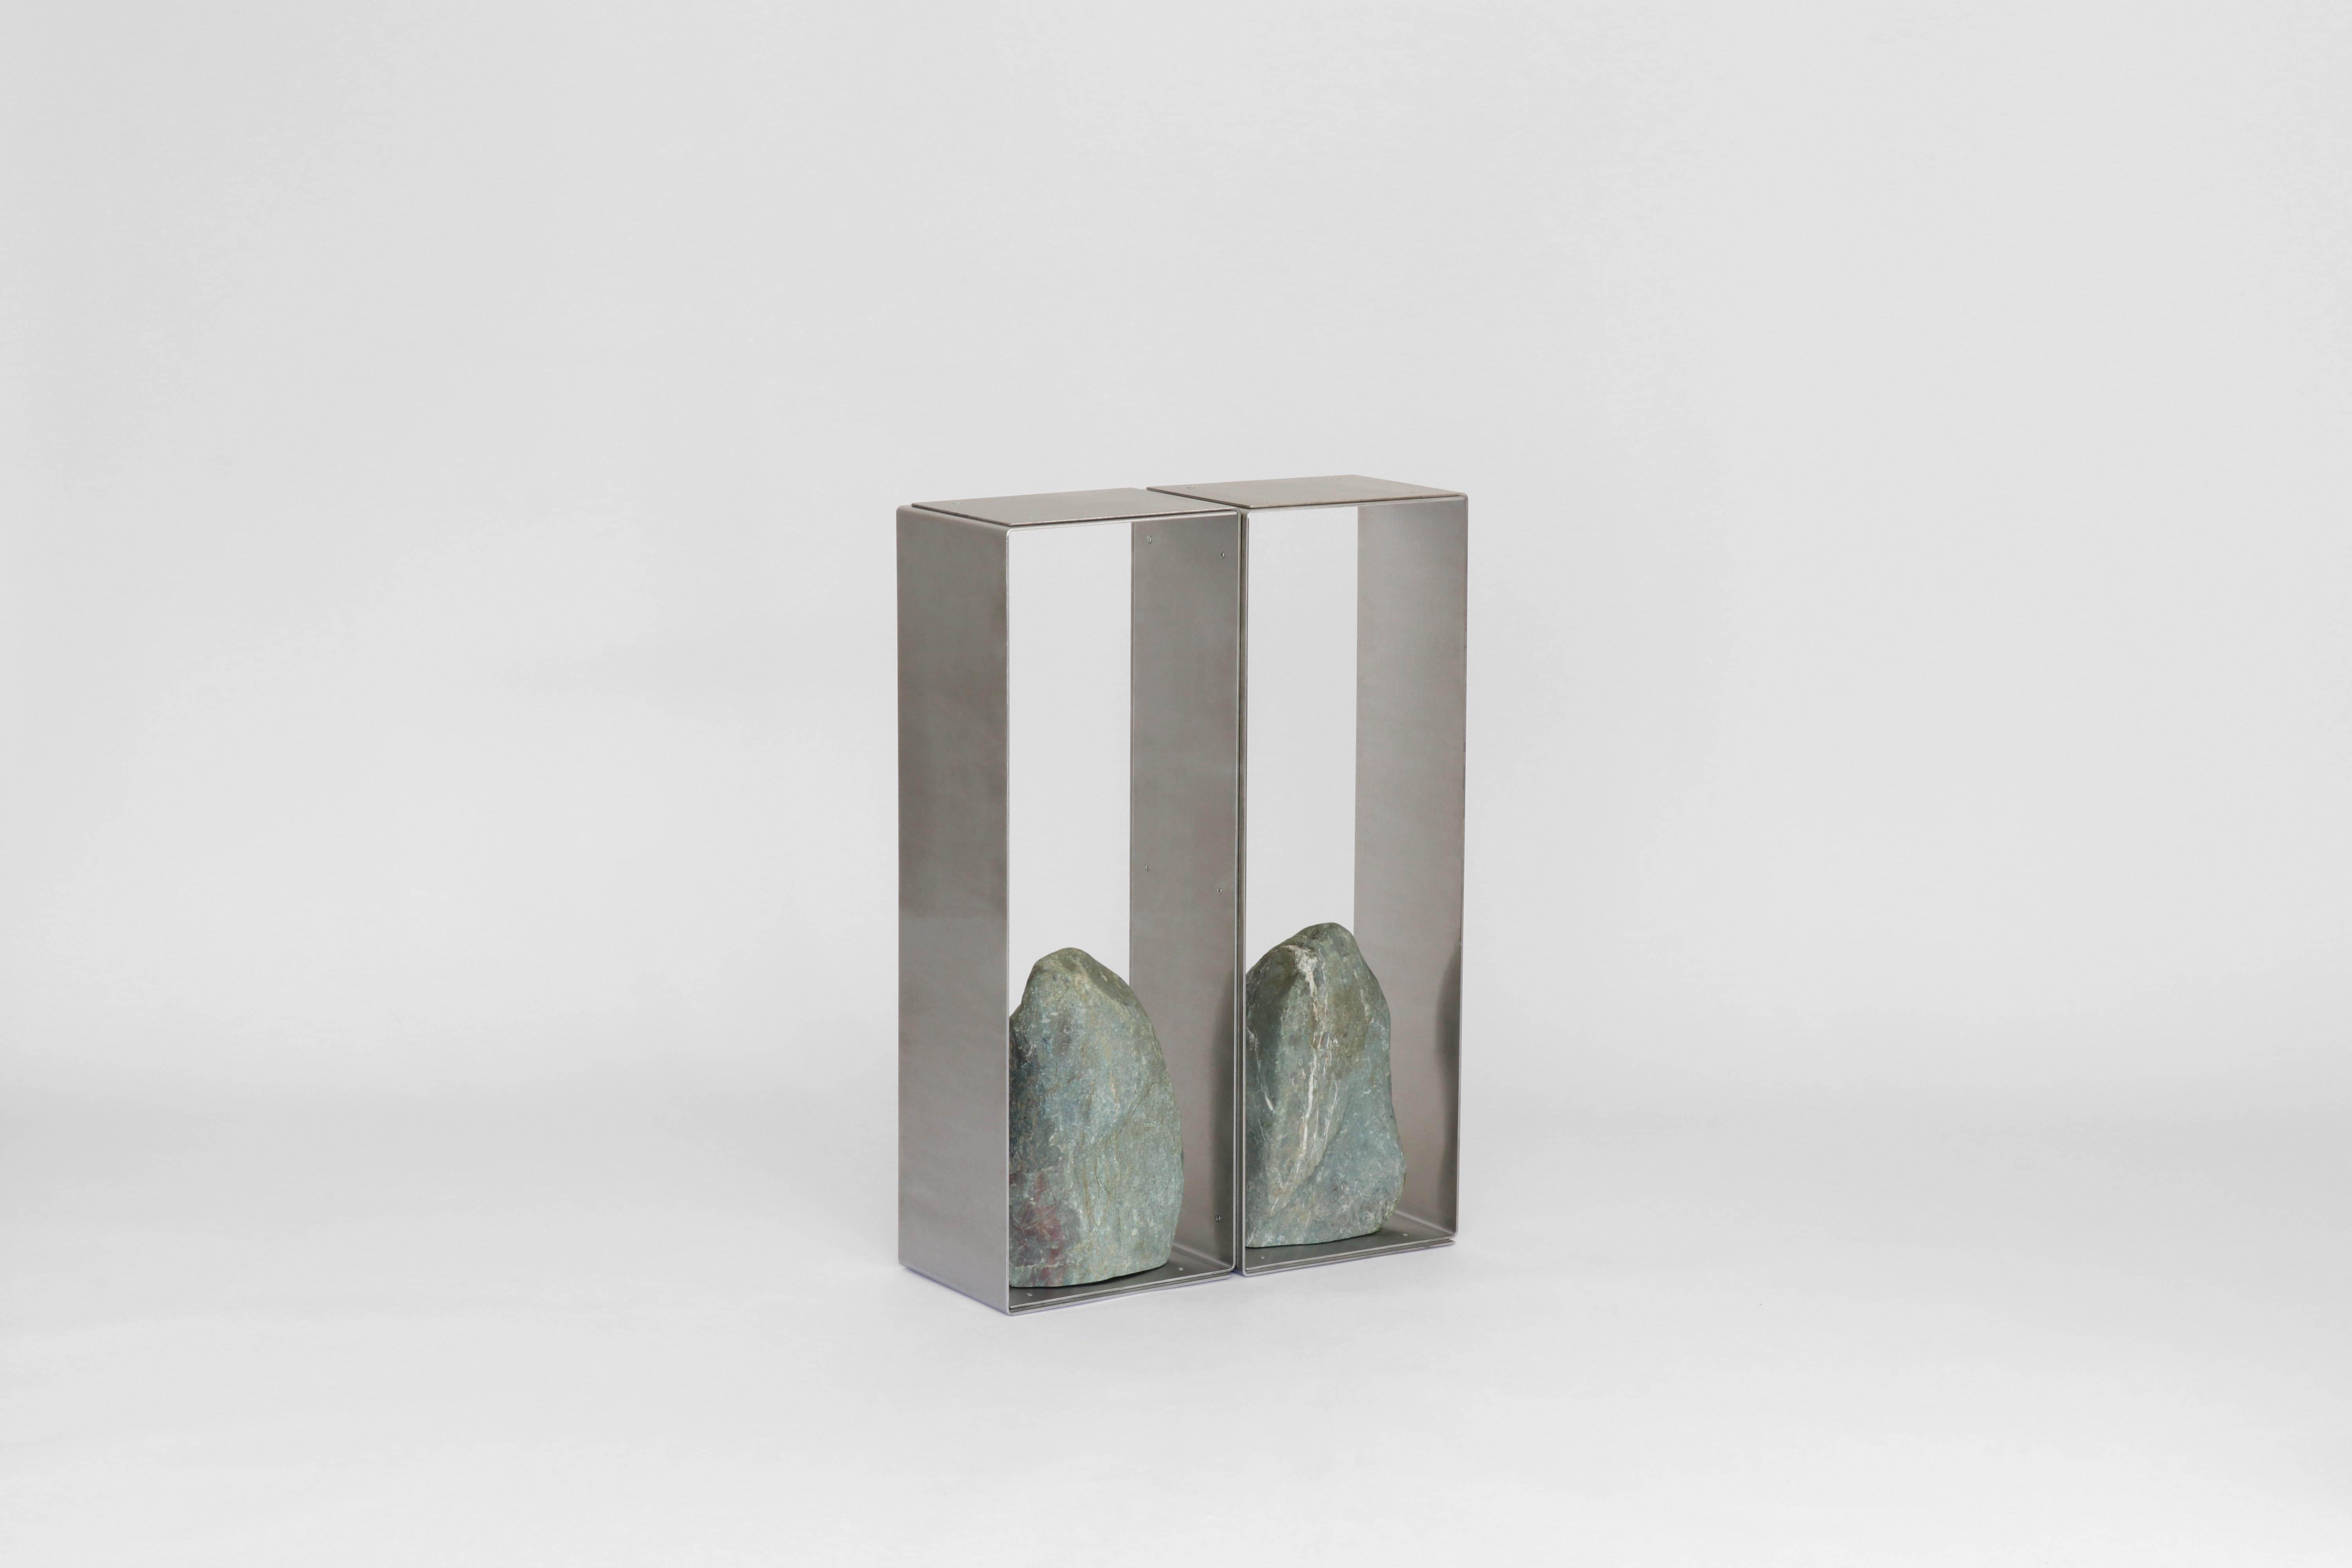 Table console en acier et pierre de Batten et Kamp
2020
Collection 